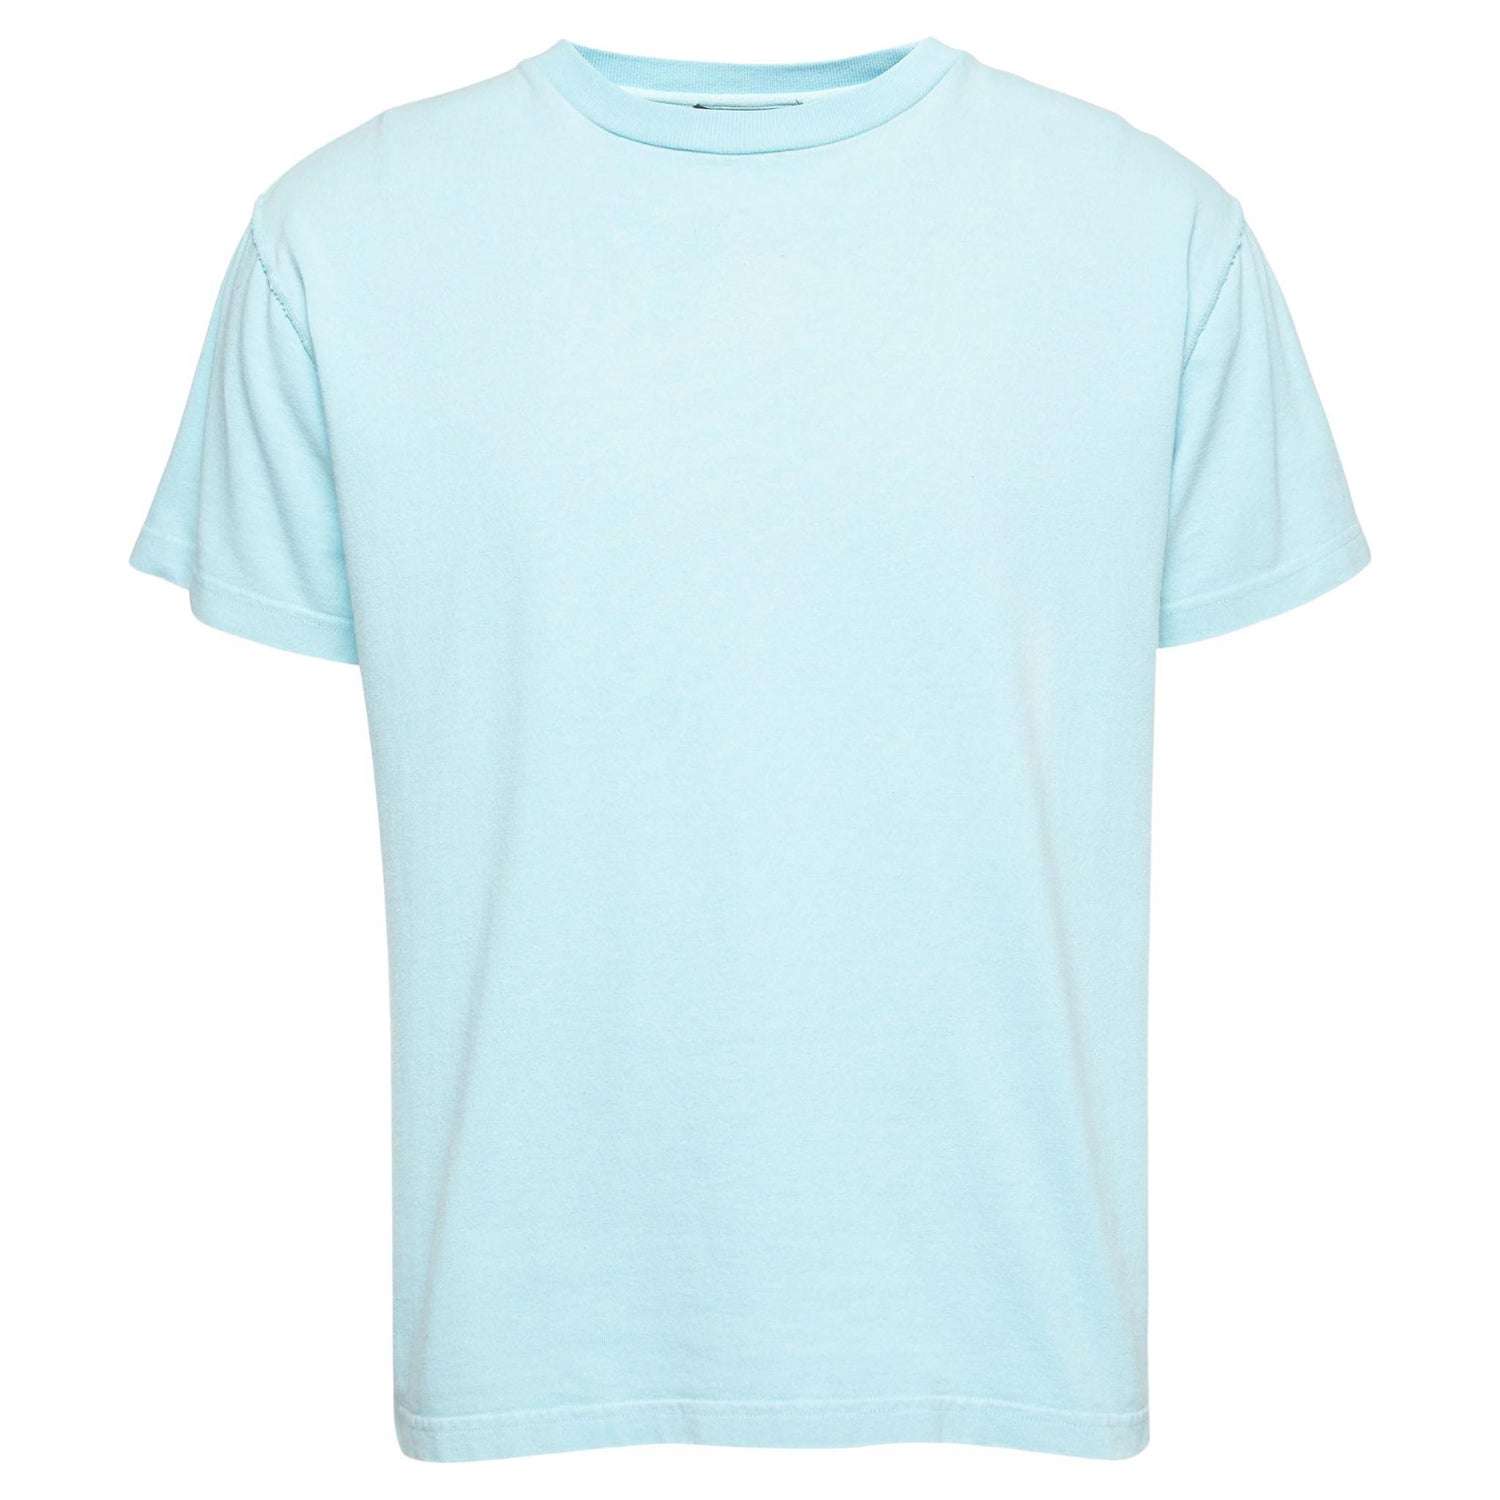 Light Blue Louis Vuitton Shirt - For Sale on 1stDibs